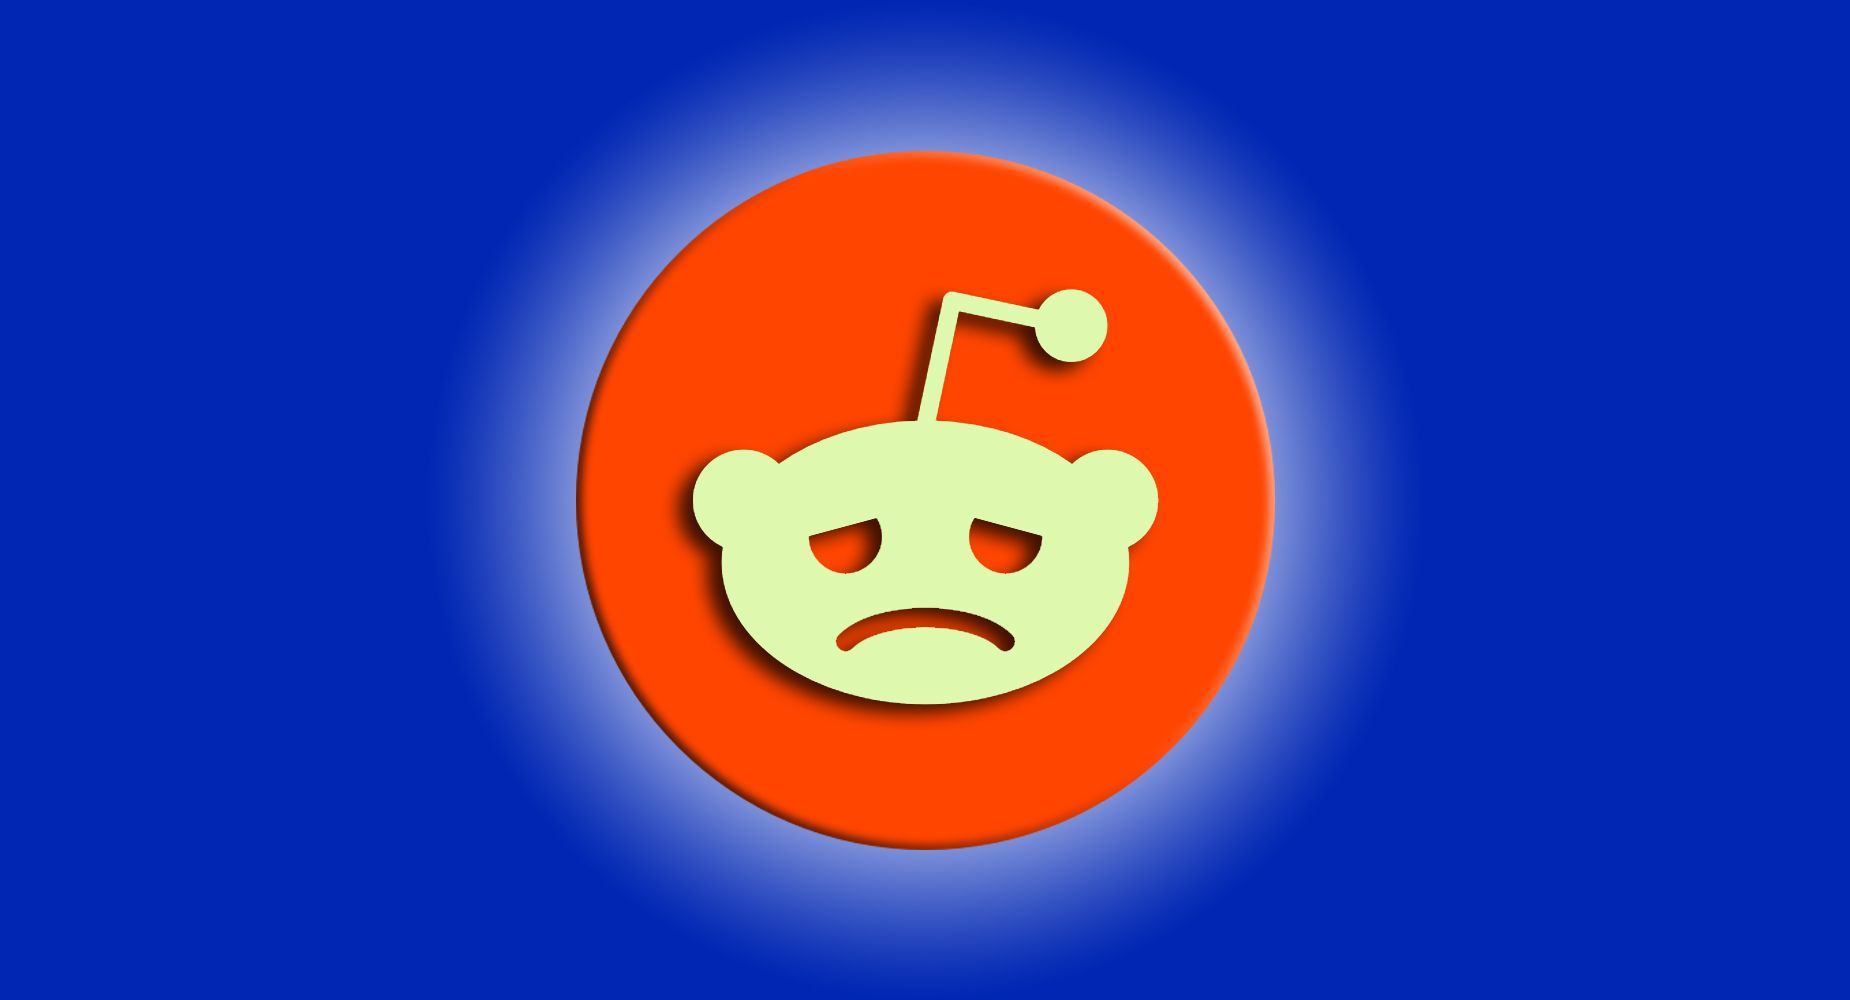 Um fundo azul com o logotipo do Reddit, que apresenta uma cabeça alienígena branca.  Porém, nesta versão, o rosto do alienígena é mostrado com uma expressão triste, com os olhos semifechados e a boca voltada para baixo.